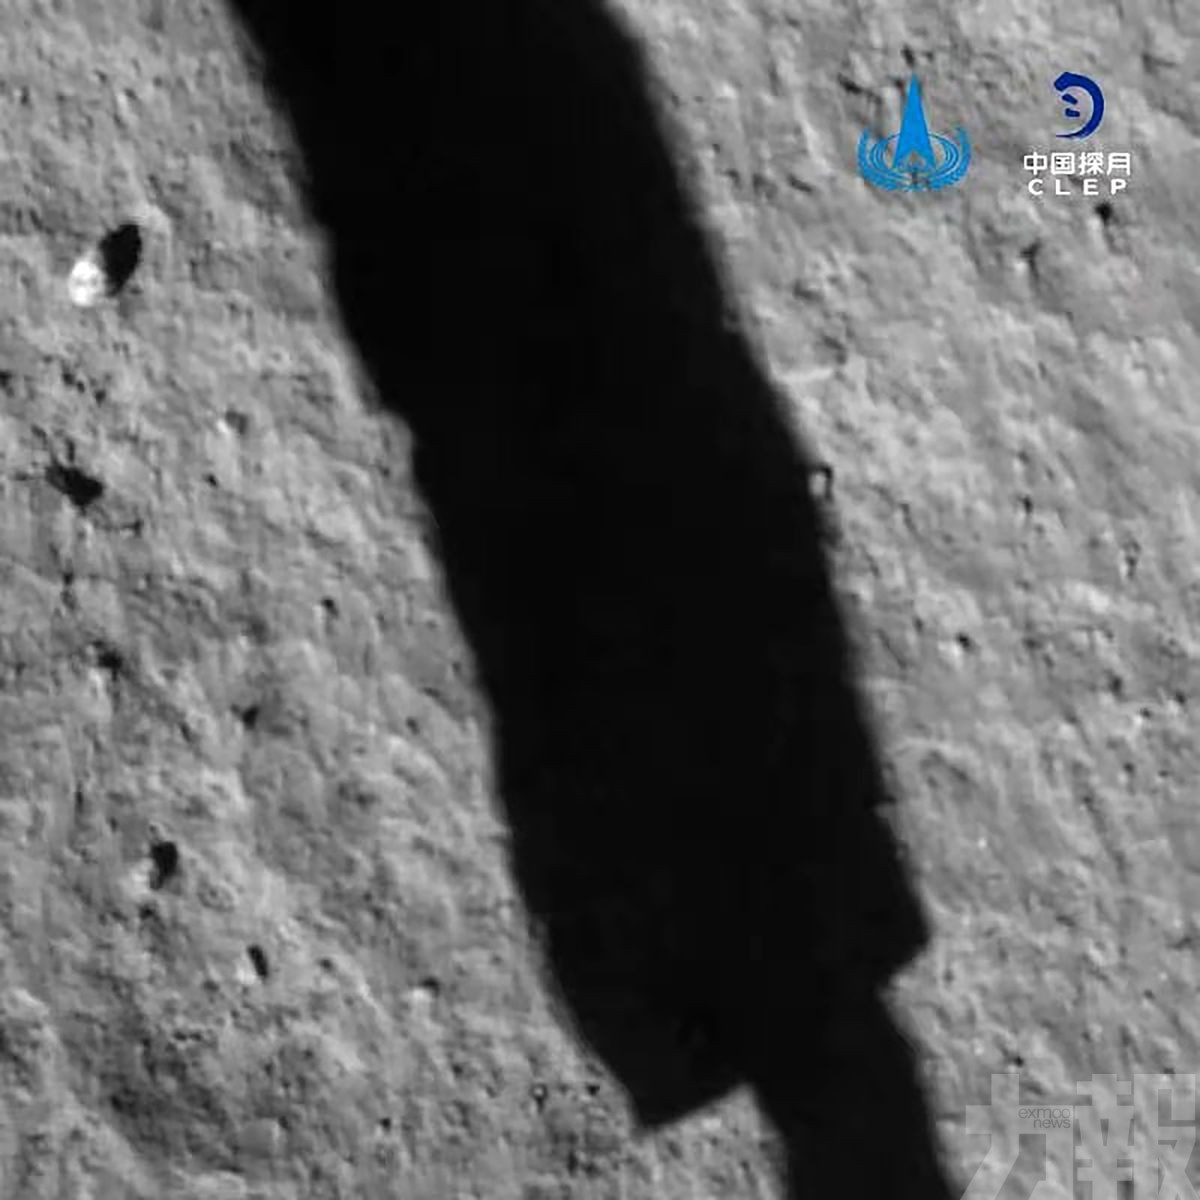 嫦娥五號完成月球鑽取採樣及封裝